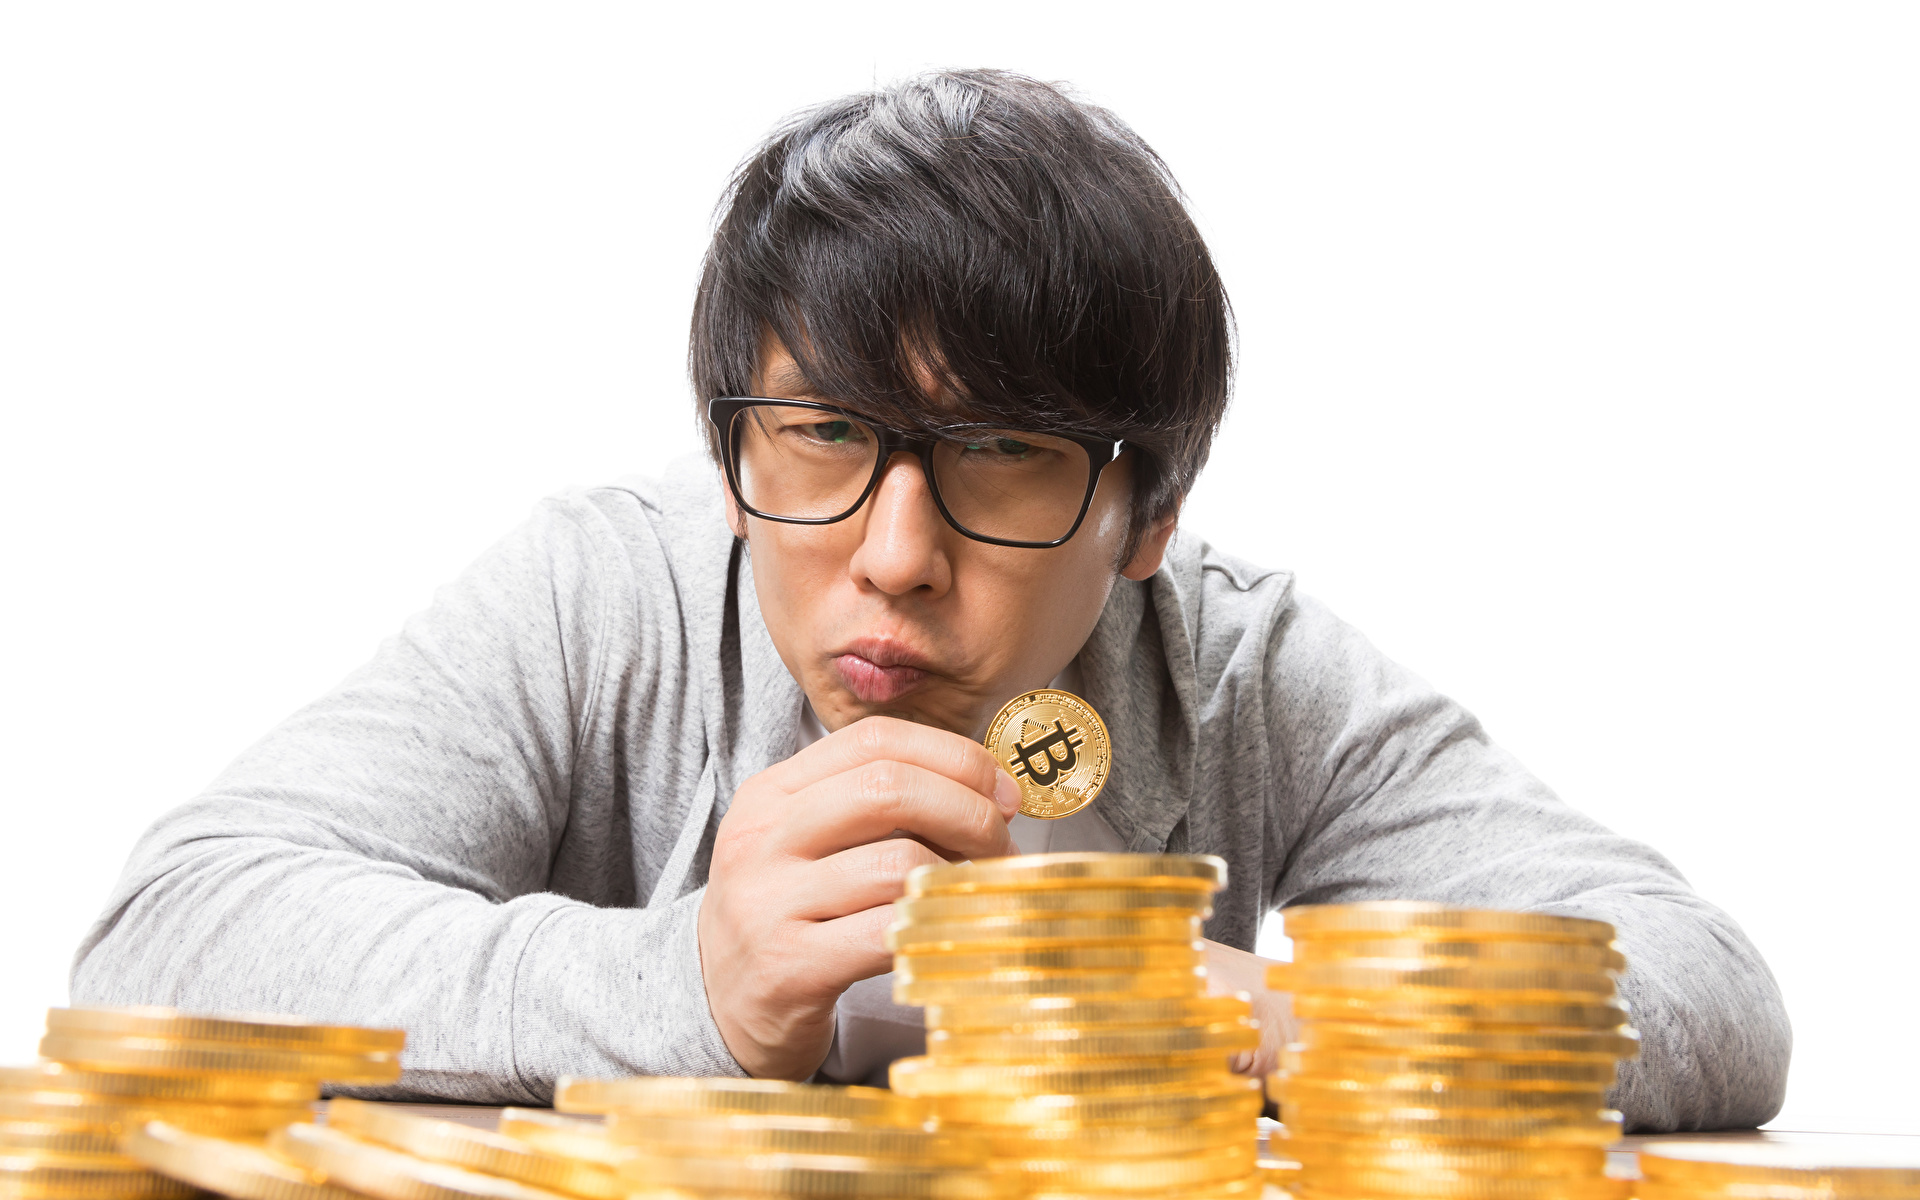 Фото Монеты Биткоин Мужчины азиатка очках Деньги смотрят 1920x1200 Bitcoin мужчина Азиаты азиатки Очки очков Взгляд смотрит